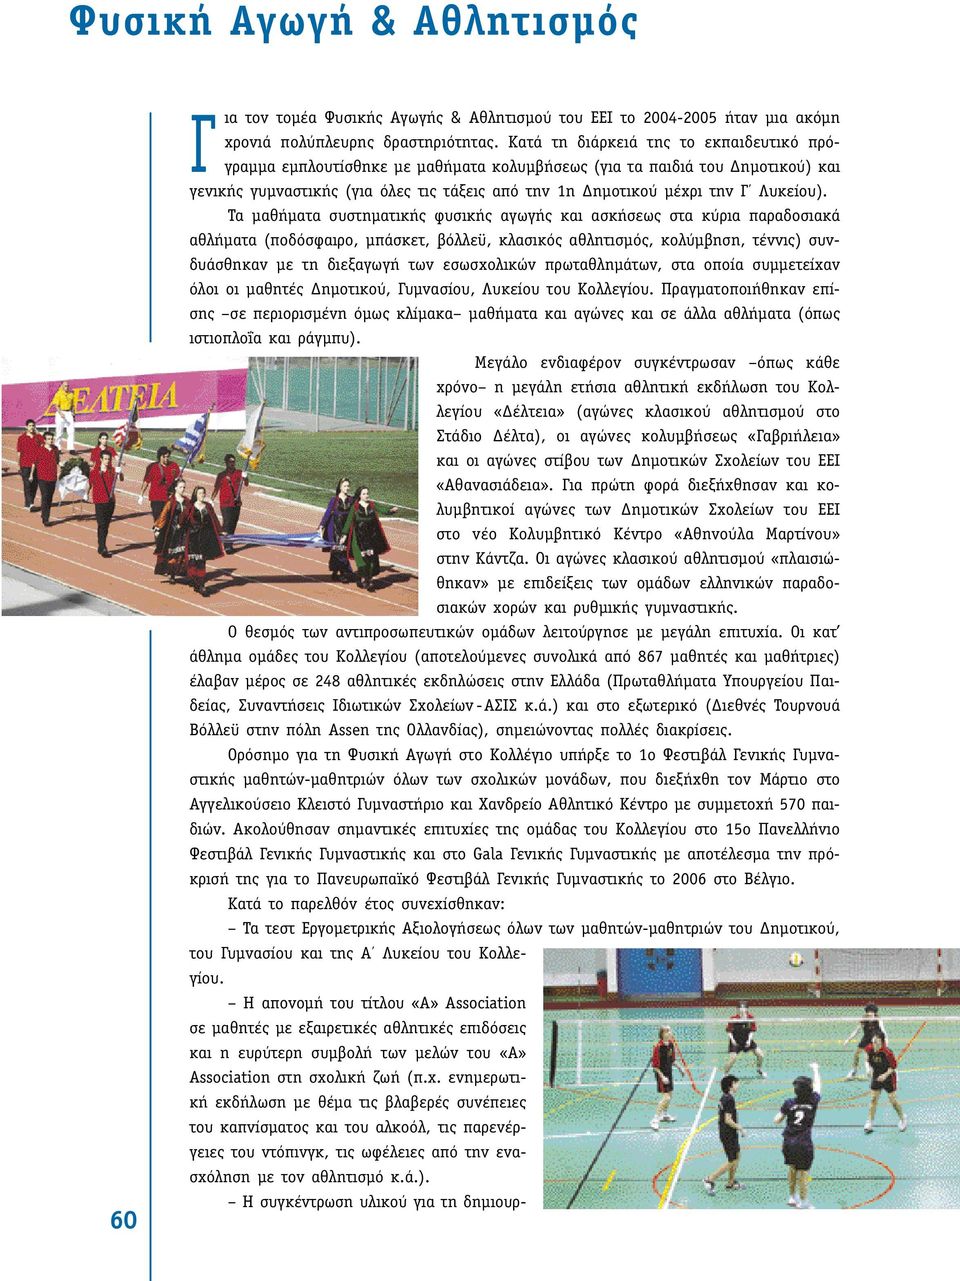 Τα µαθήµατα συστηµατικής φυσικής αγωγής και ασκήσεως στα κύρια παραδοσιακά αθλήµατα (ποδόσφαιρο, µπάσκετ, βόλλεϋ, κλασικός αθλητισµός, κολύµβηση, τέννις) συνδυάσθηκαν µε τη διεξαγωγή των εσωσχολικών